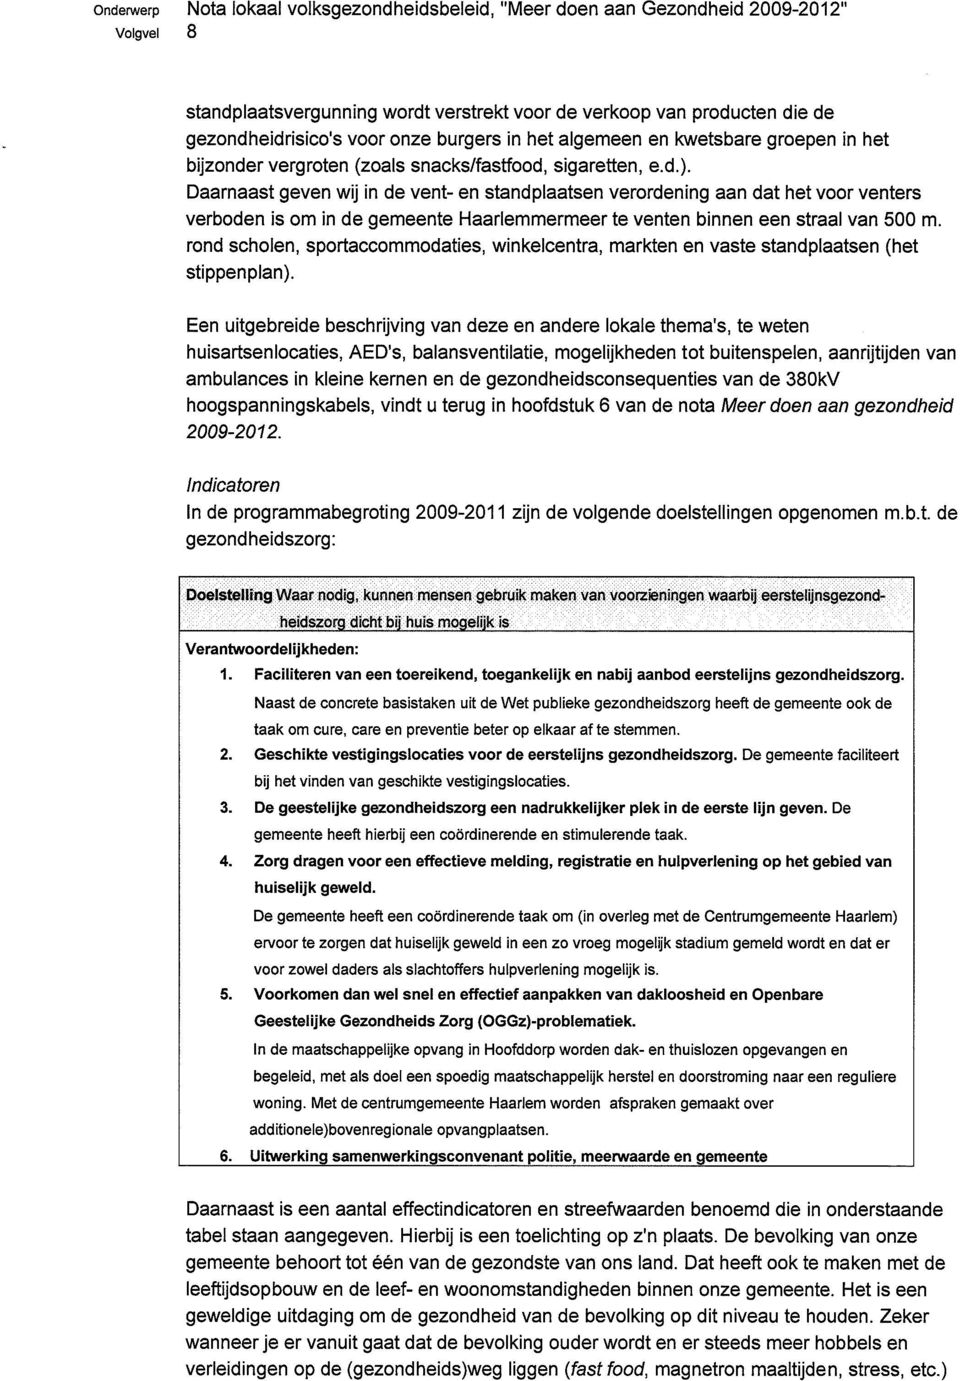 Daarnaast geven wij in de vent- en standplaatsen verordening aan dat het voor venters verboden is om in de gemeente Haarlemmermeer te venten binnen een straal van 500 m.